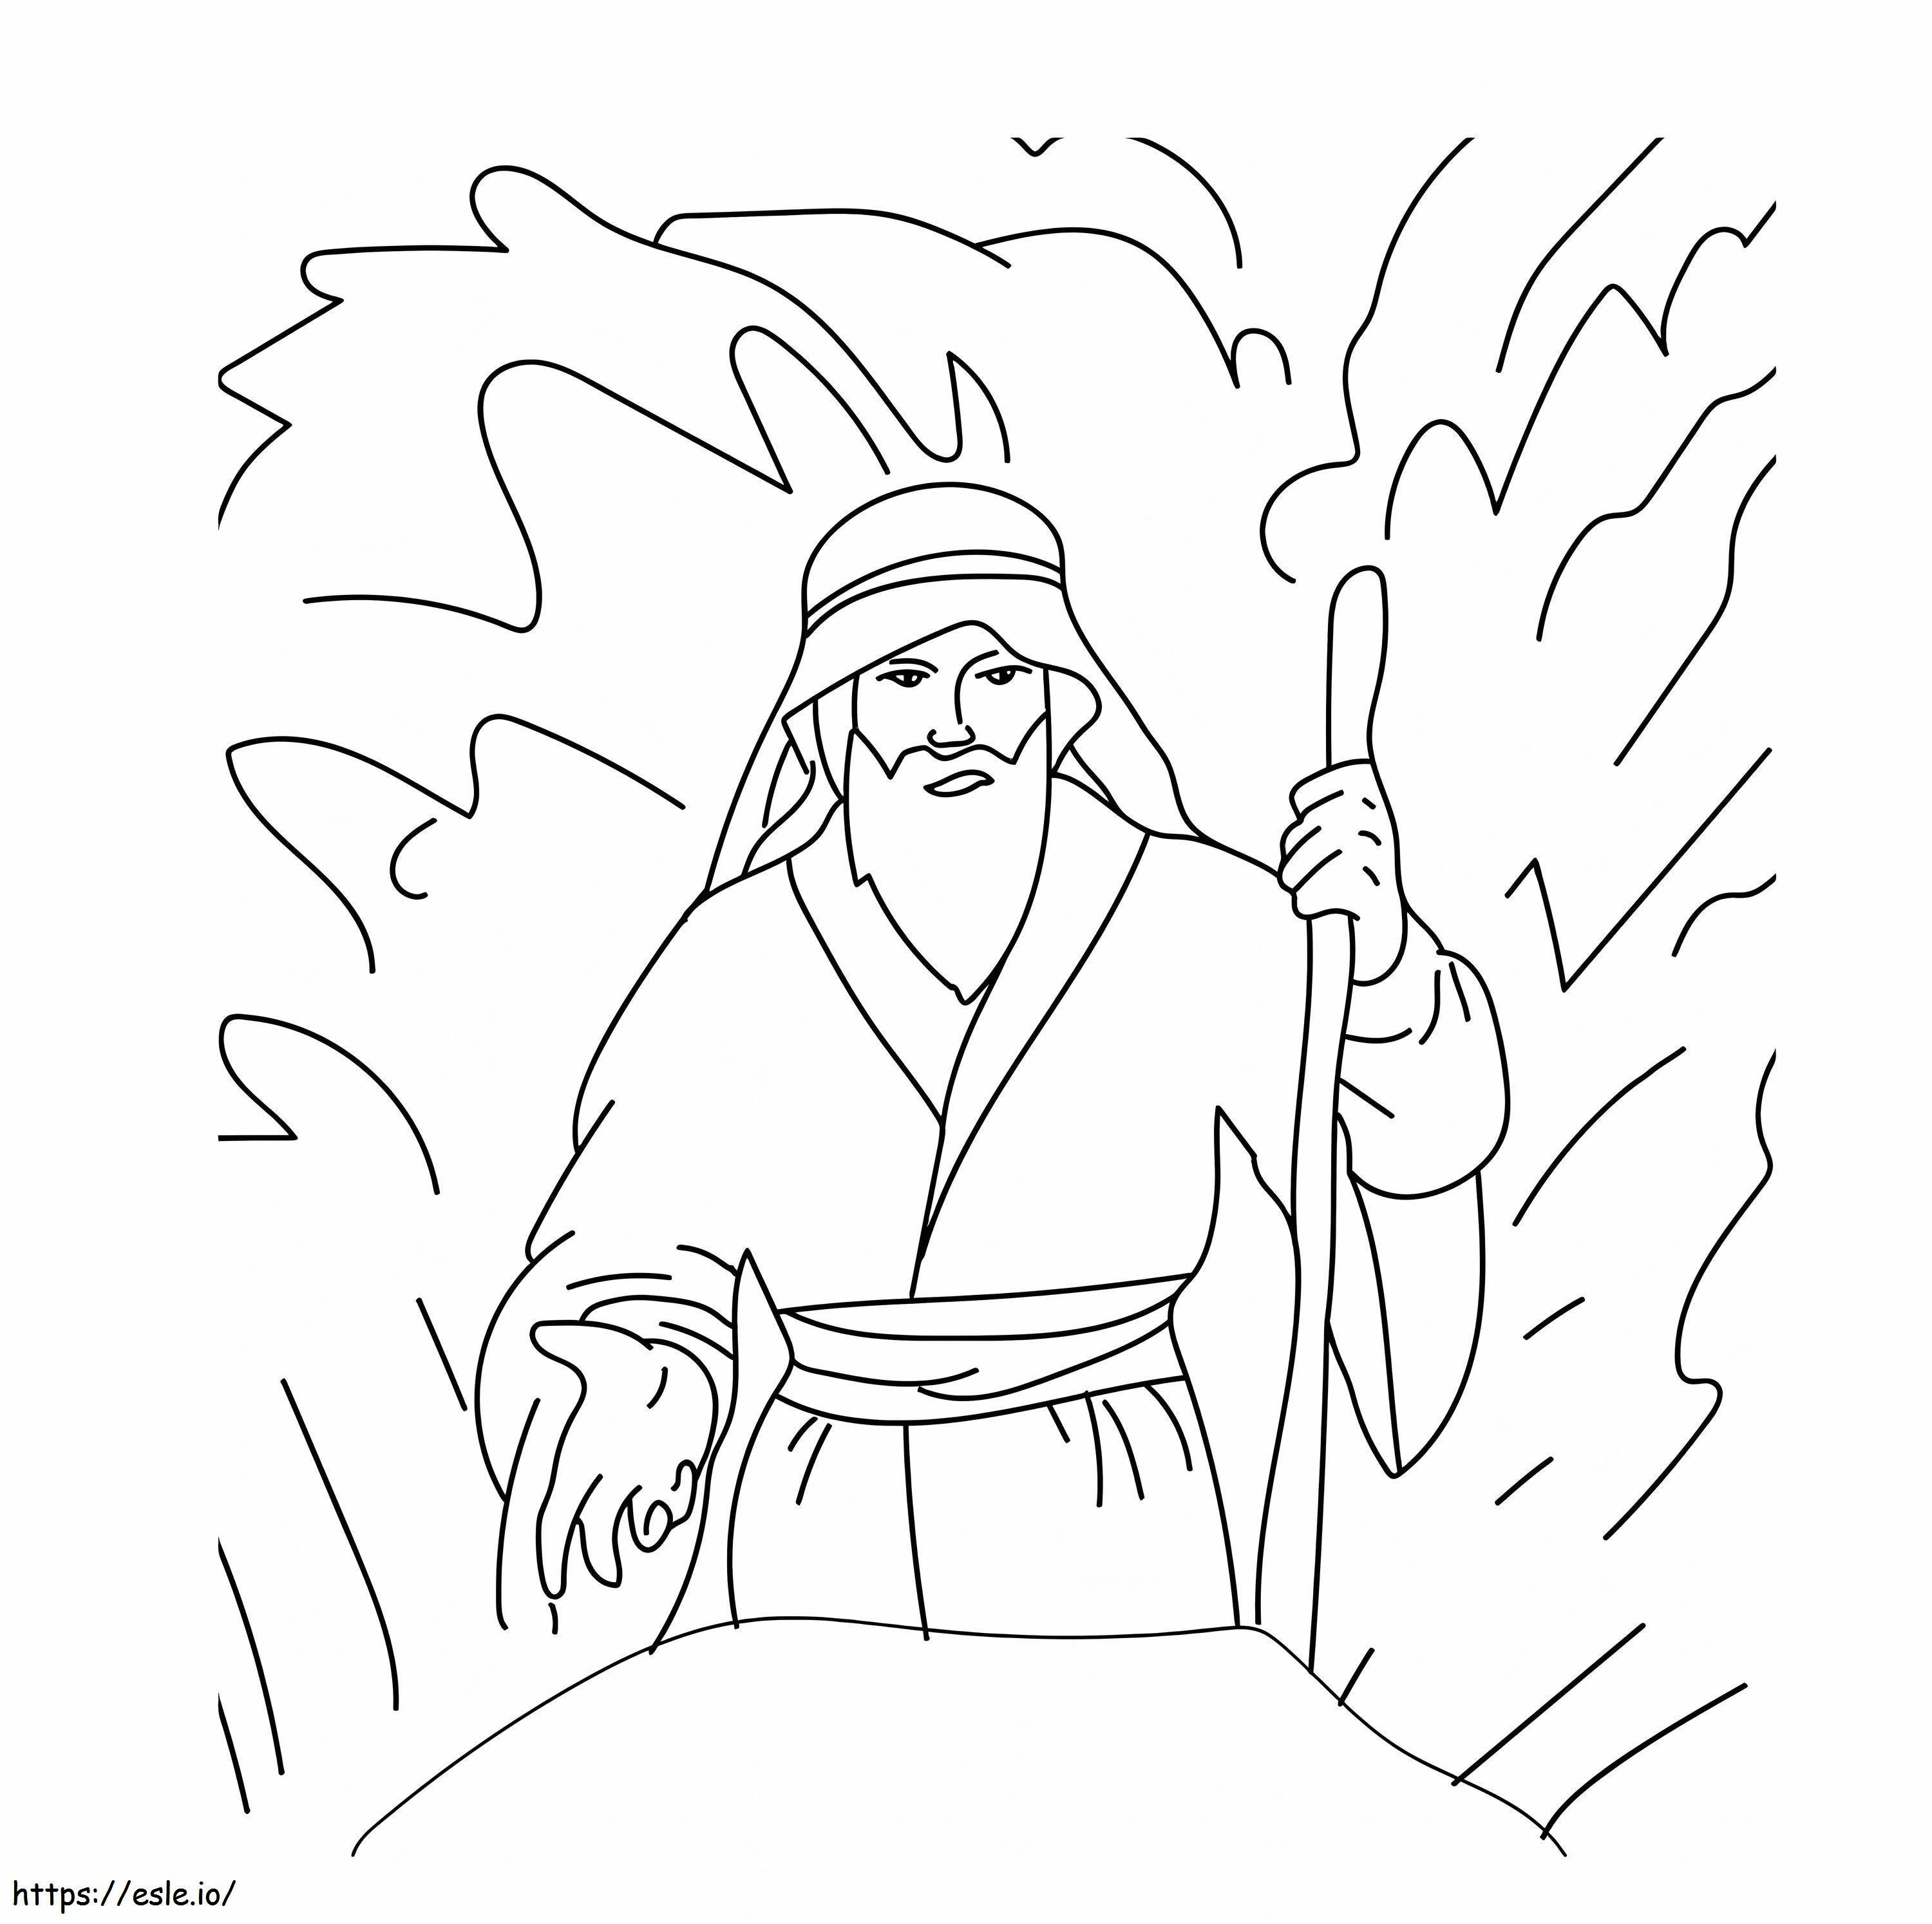 Moses Malseite ausmalbilder